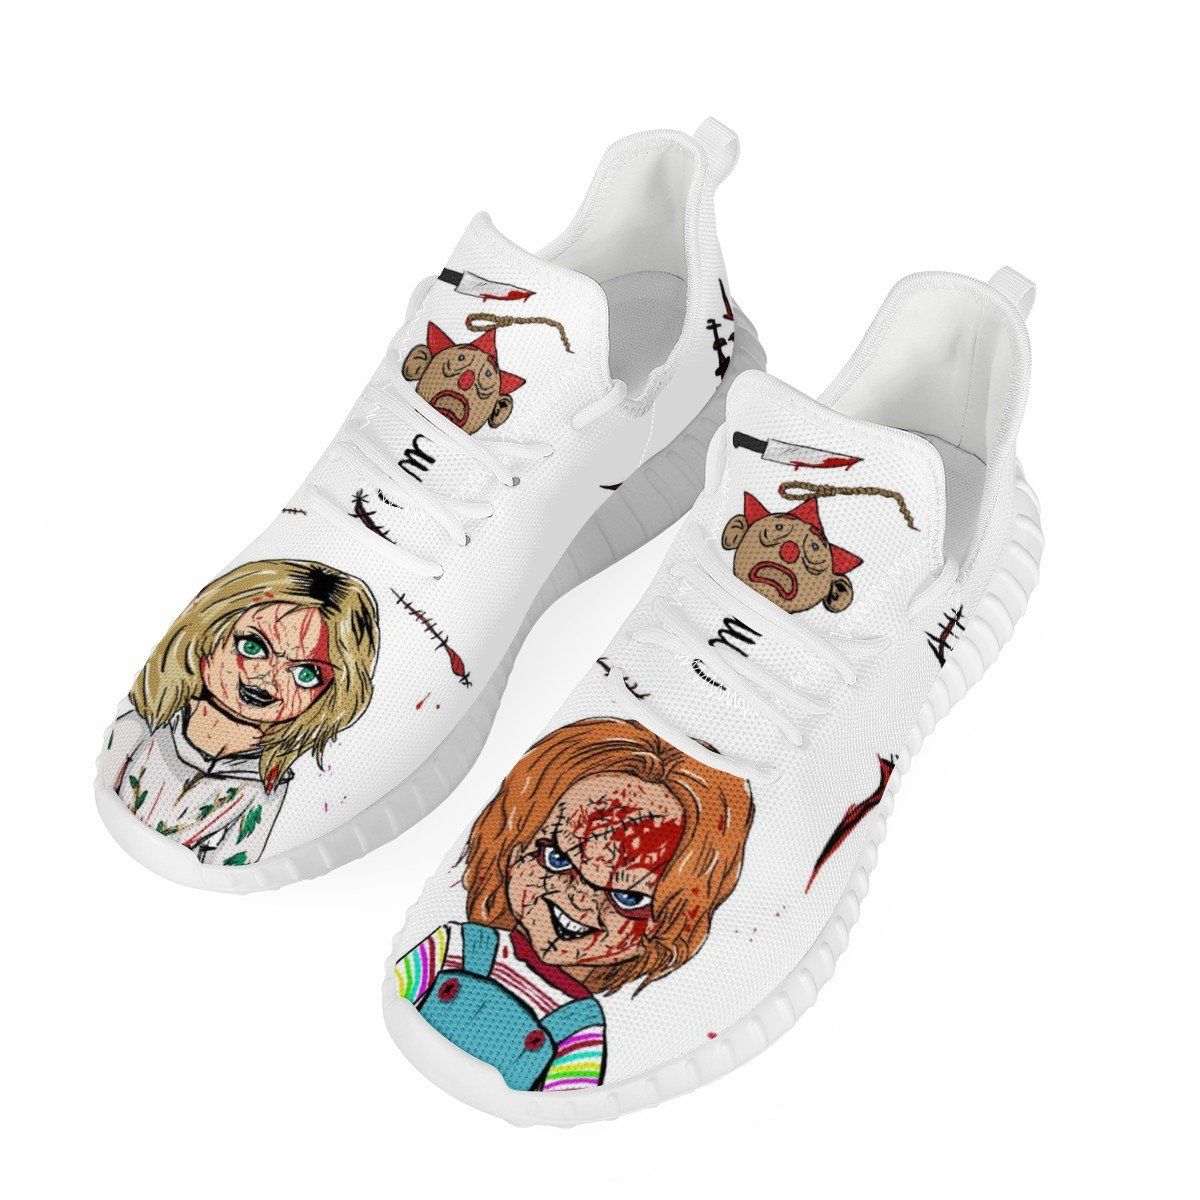 Chucky Mesh Knit Sneaker Yeezy, Horror, Chucky noxfan 